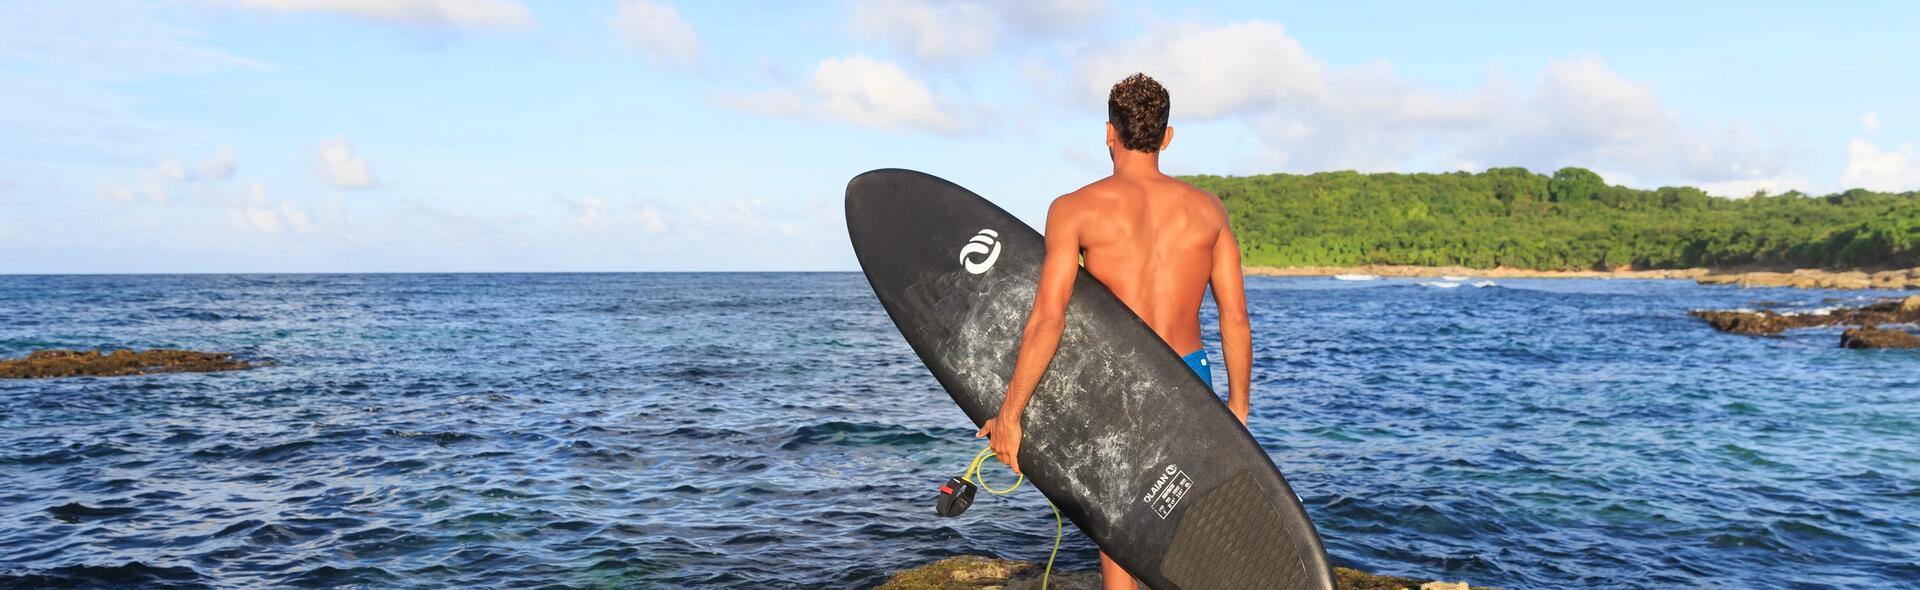 Prancha de surf olaian